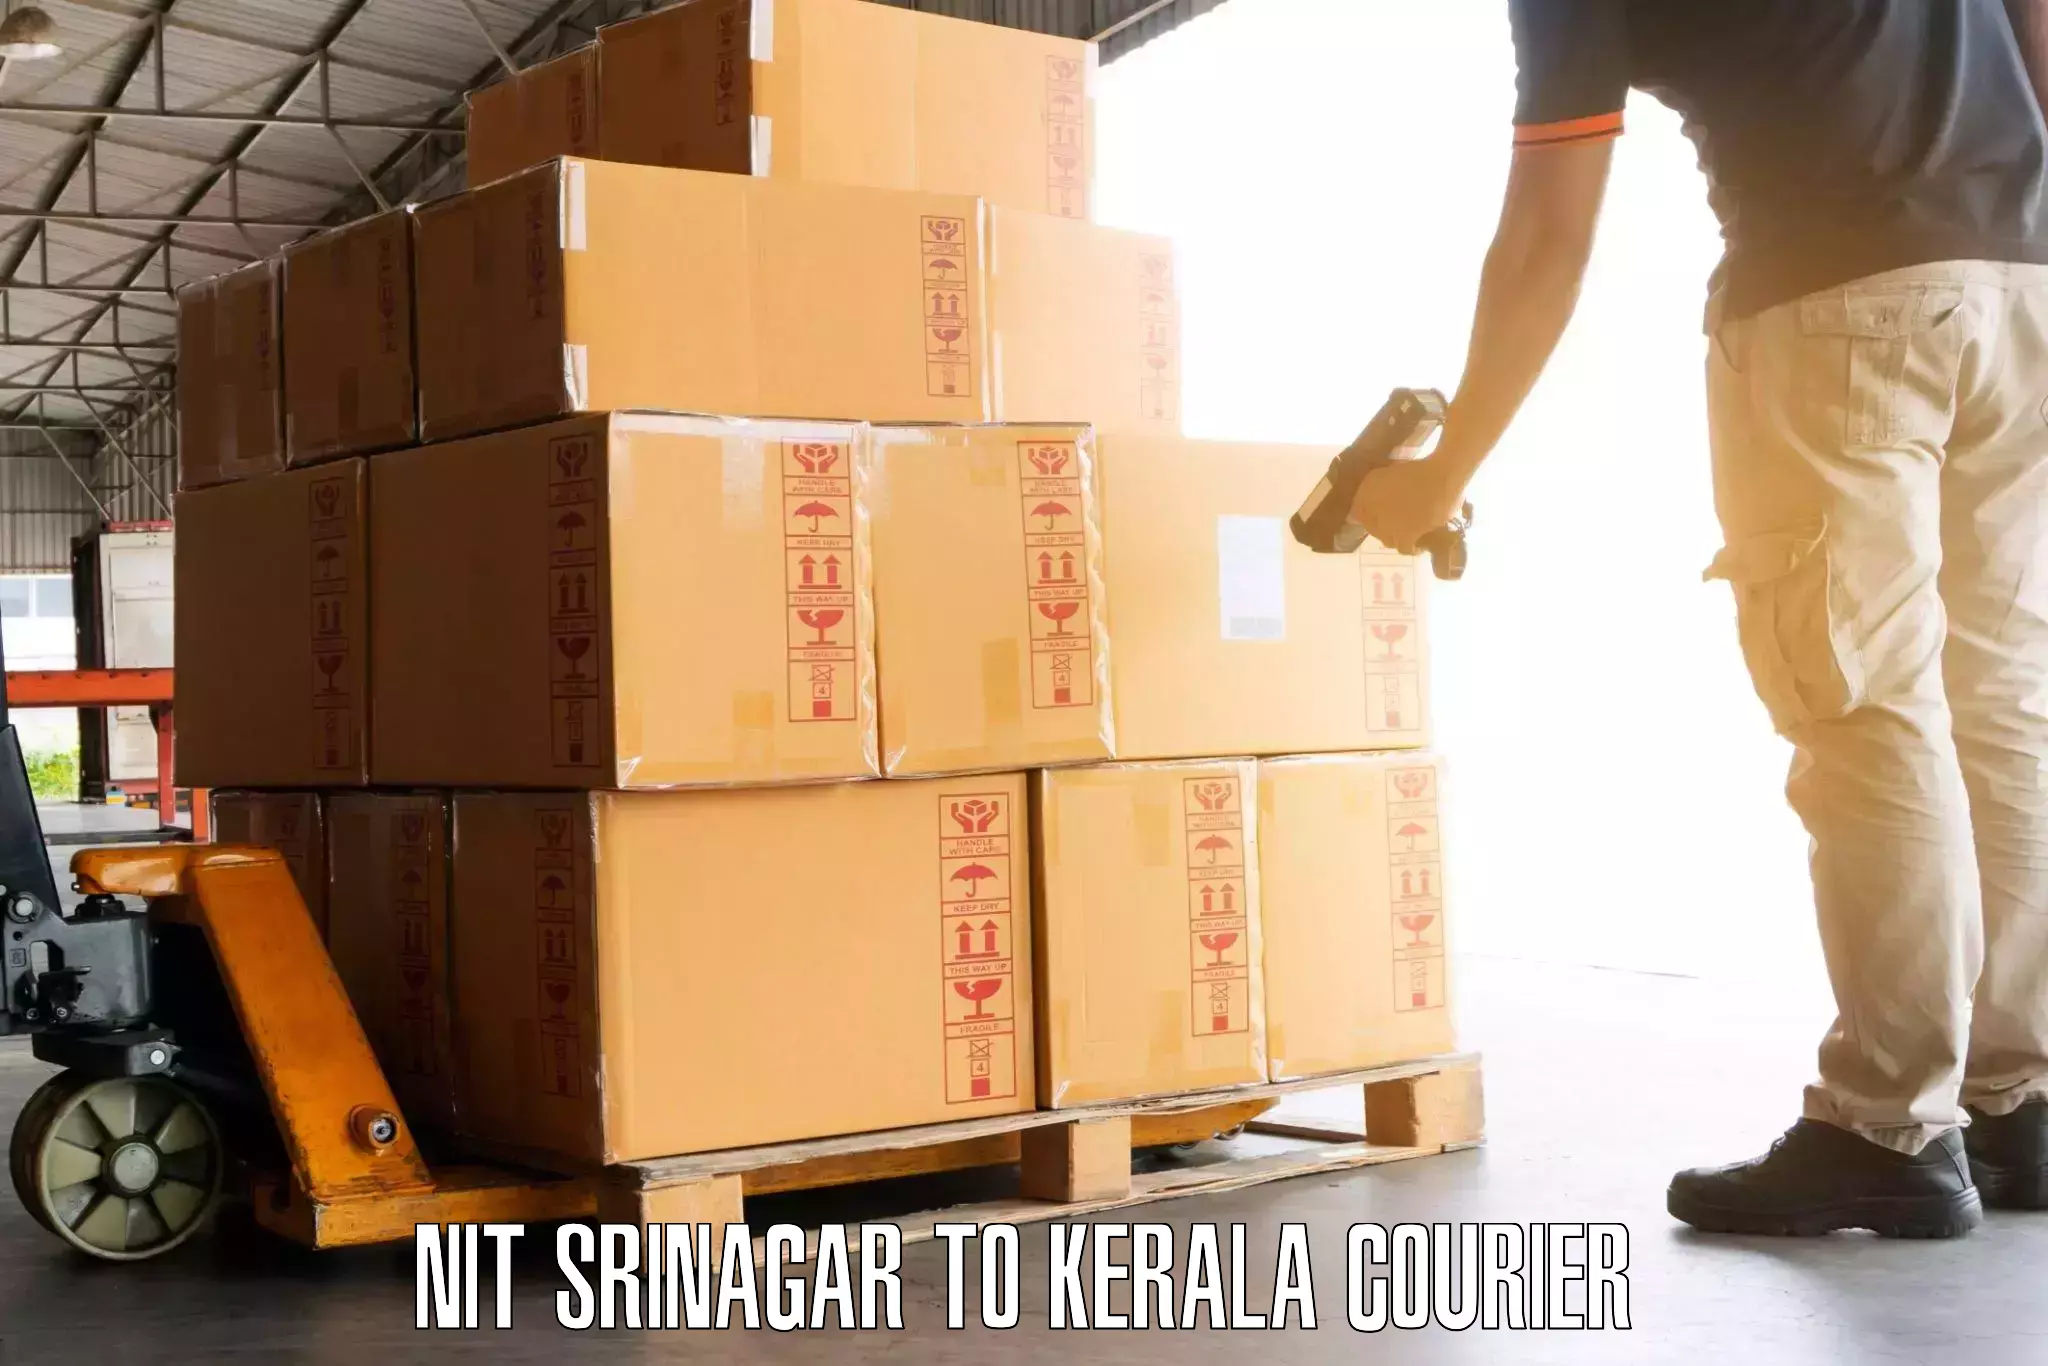 Same day luggage service in NIT Srinagar to Anjumoorthy